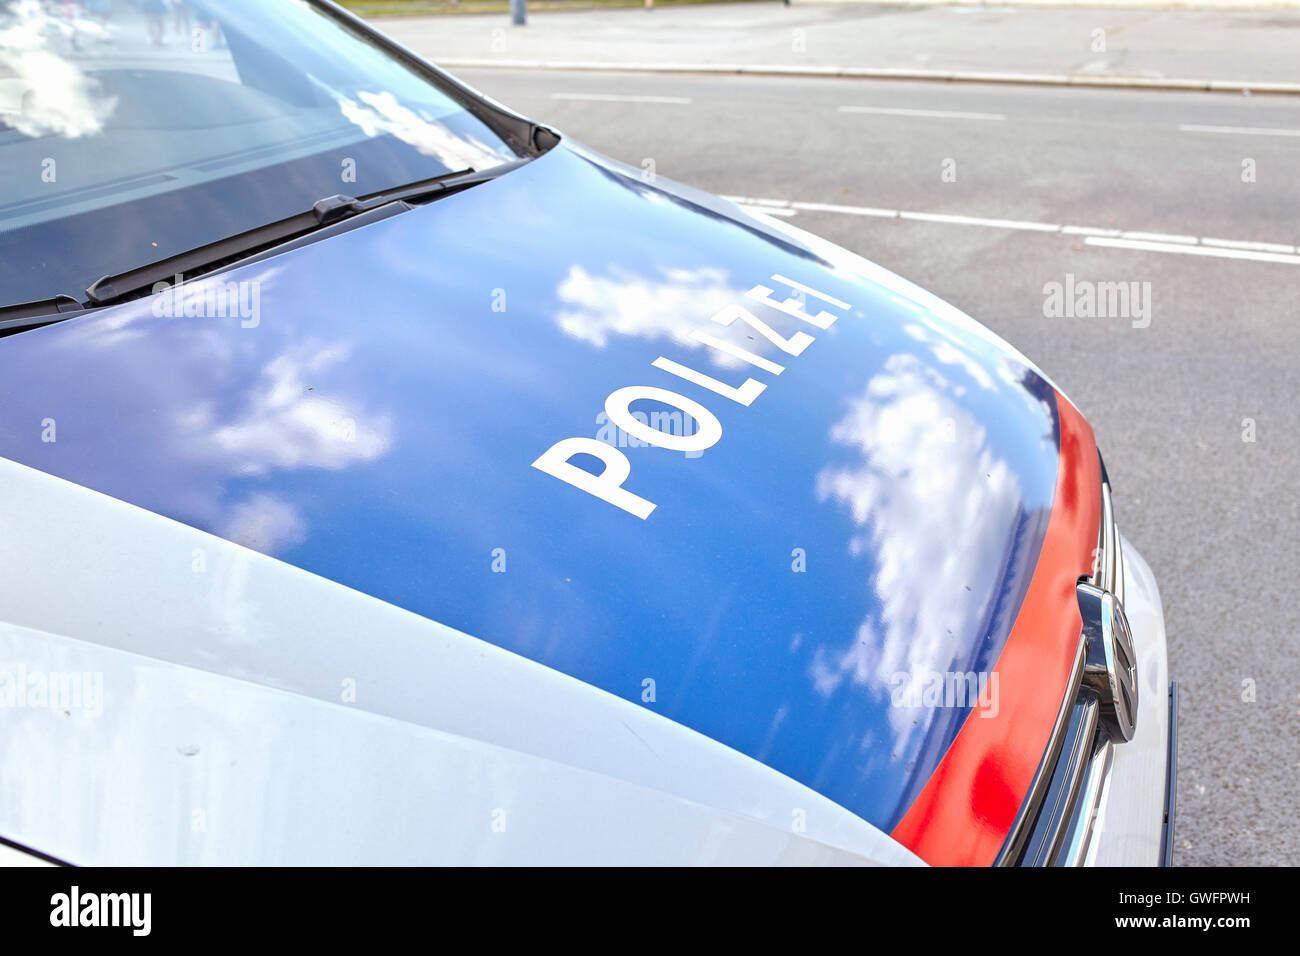 Wien, Österreich - 14. August 2016: Nahaufnahme von einer Polizei-Motorhaube auf einer Straße geparkt. Stockfoto